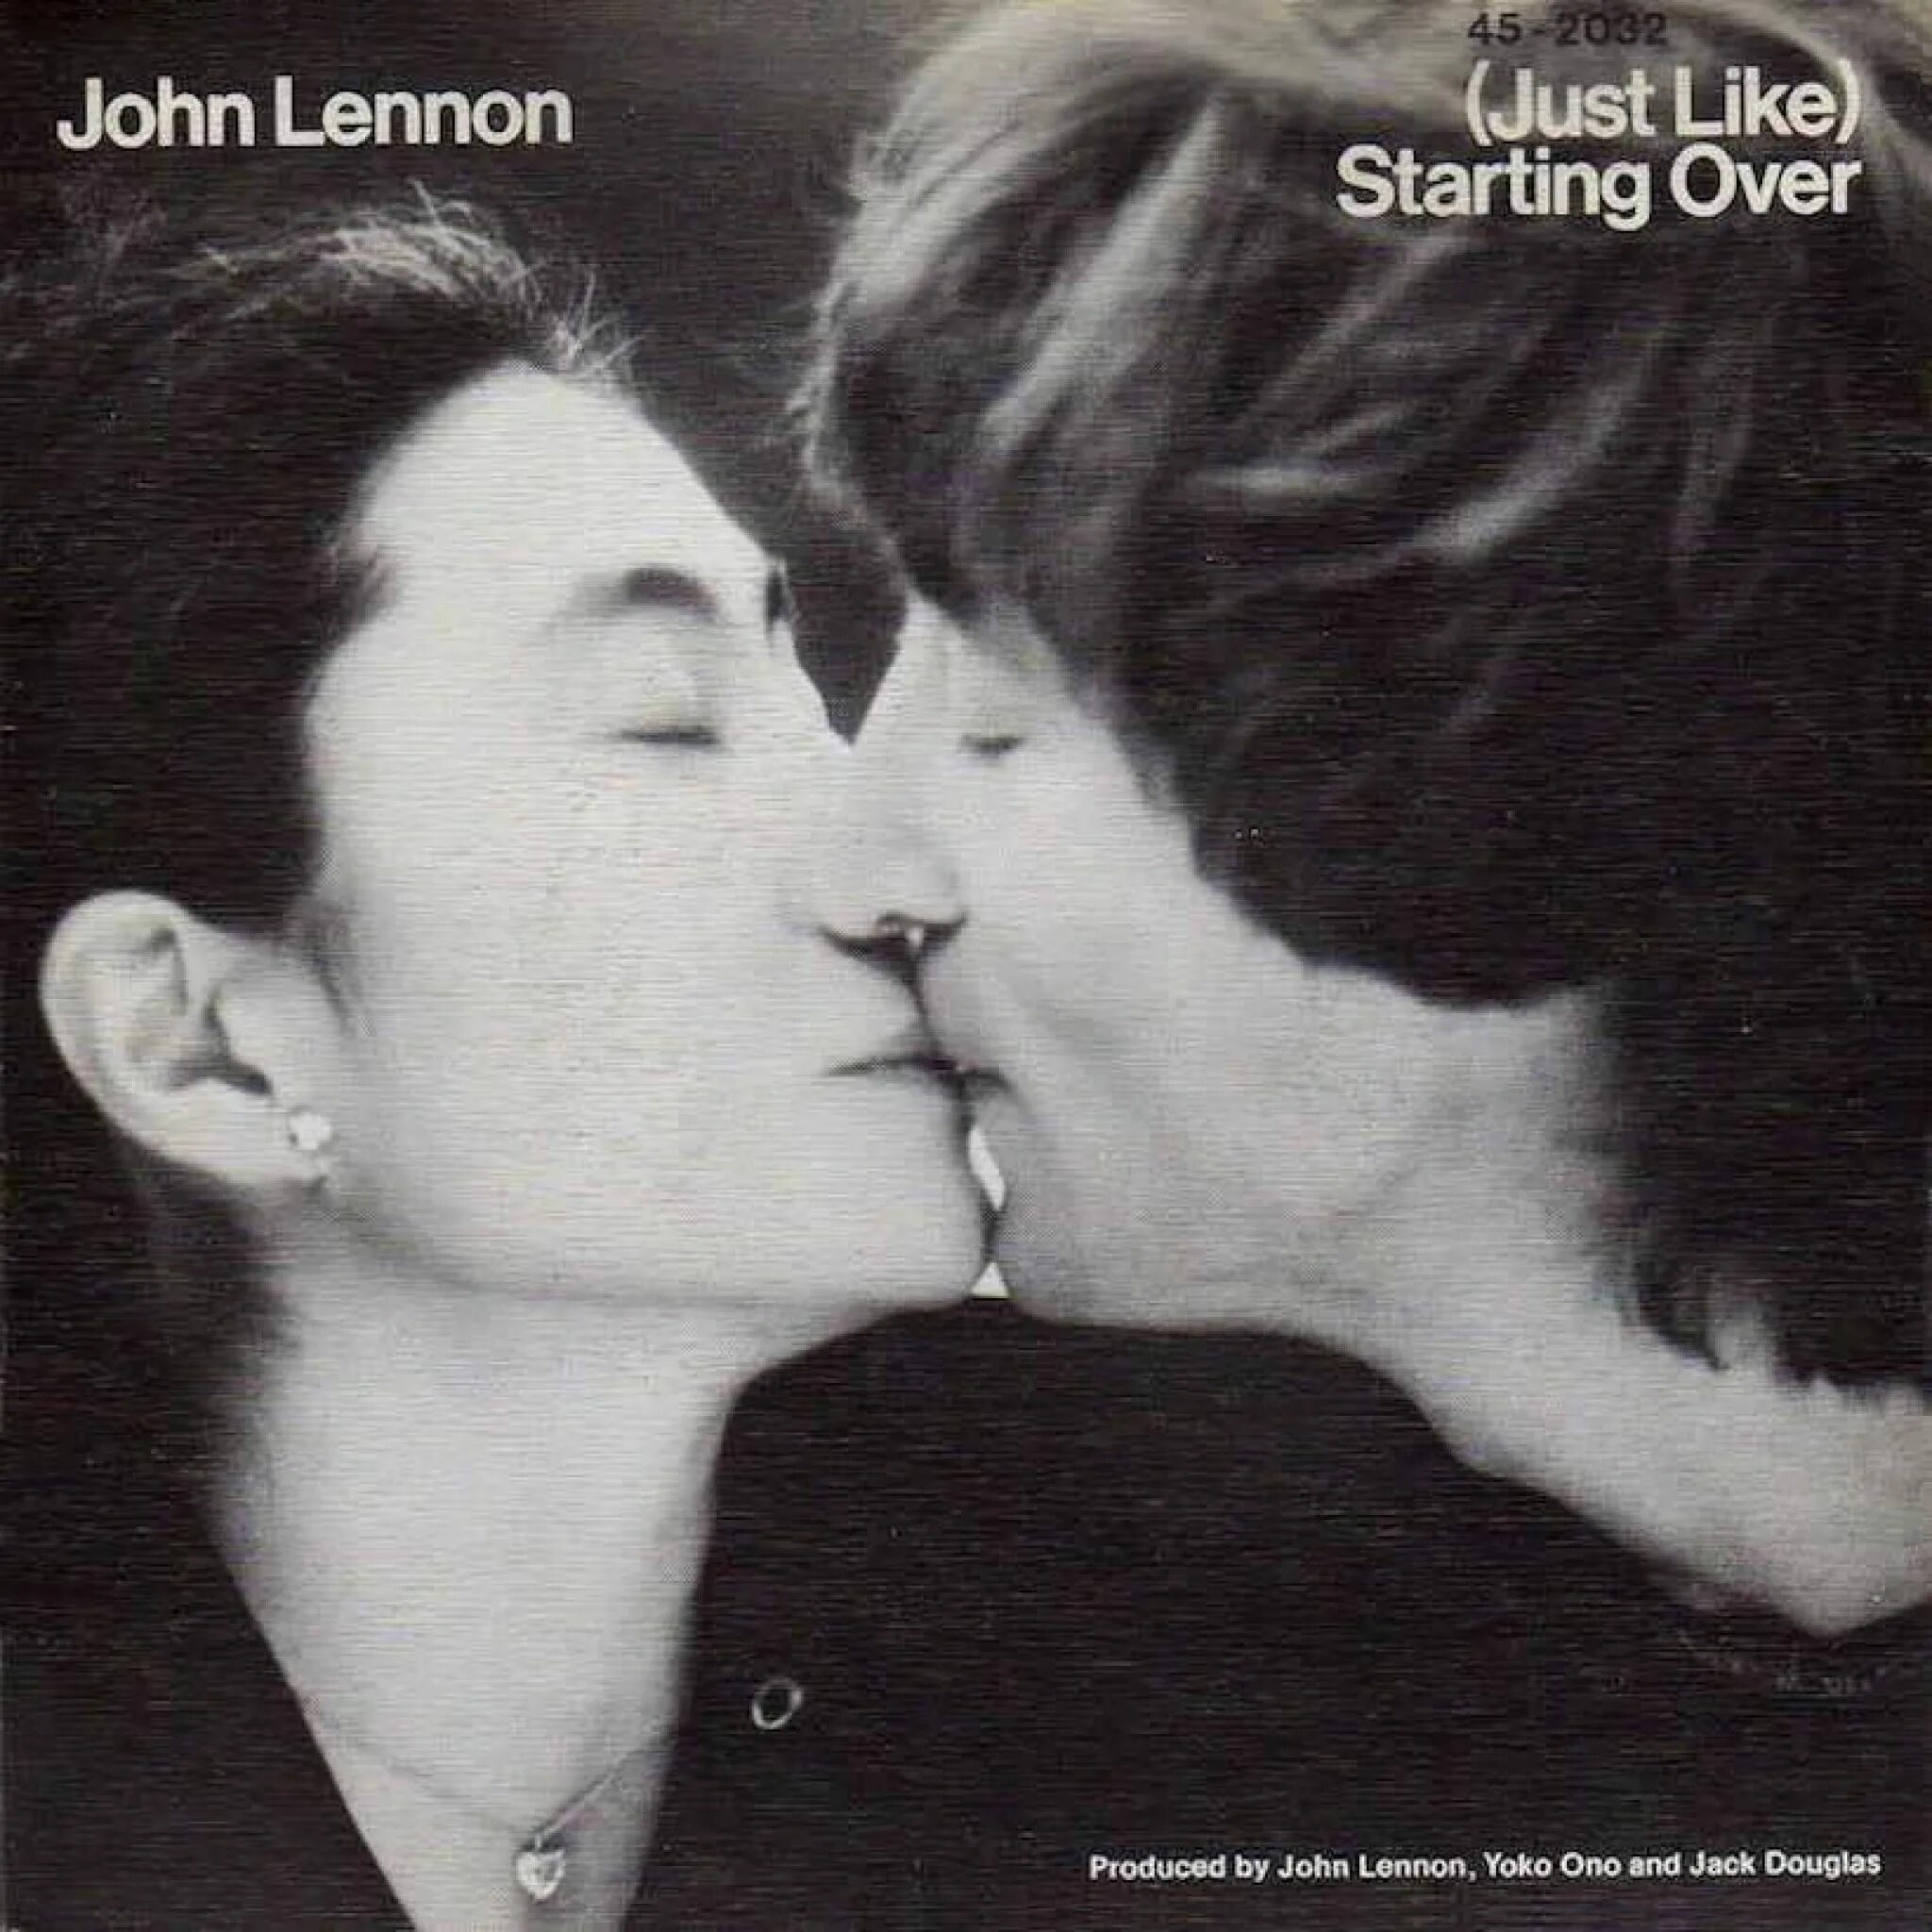 John Lennon Double Fantasy 1980. John Lennon Yoko Ono Double Fantasy 1980. John Lennon Double Fantasy обложка. Джон Леннон Стартинг овер.